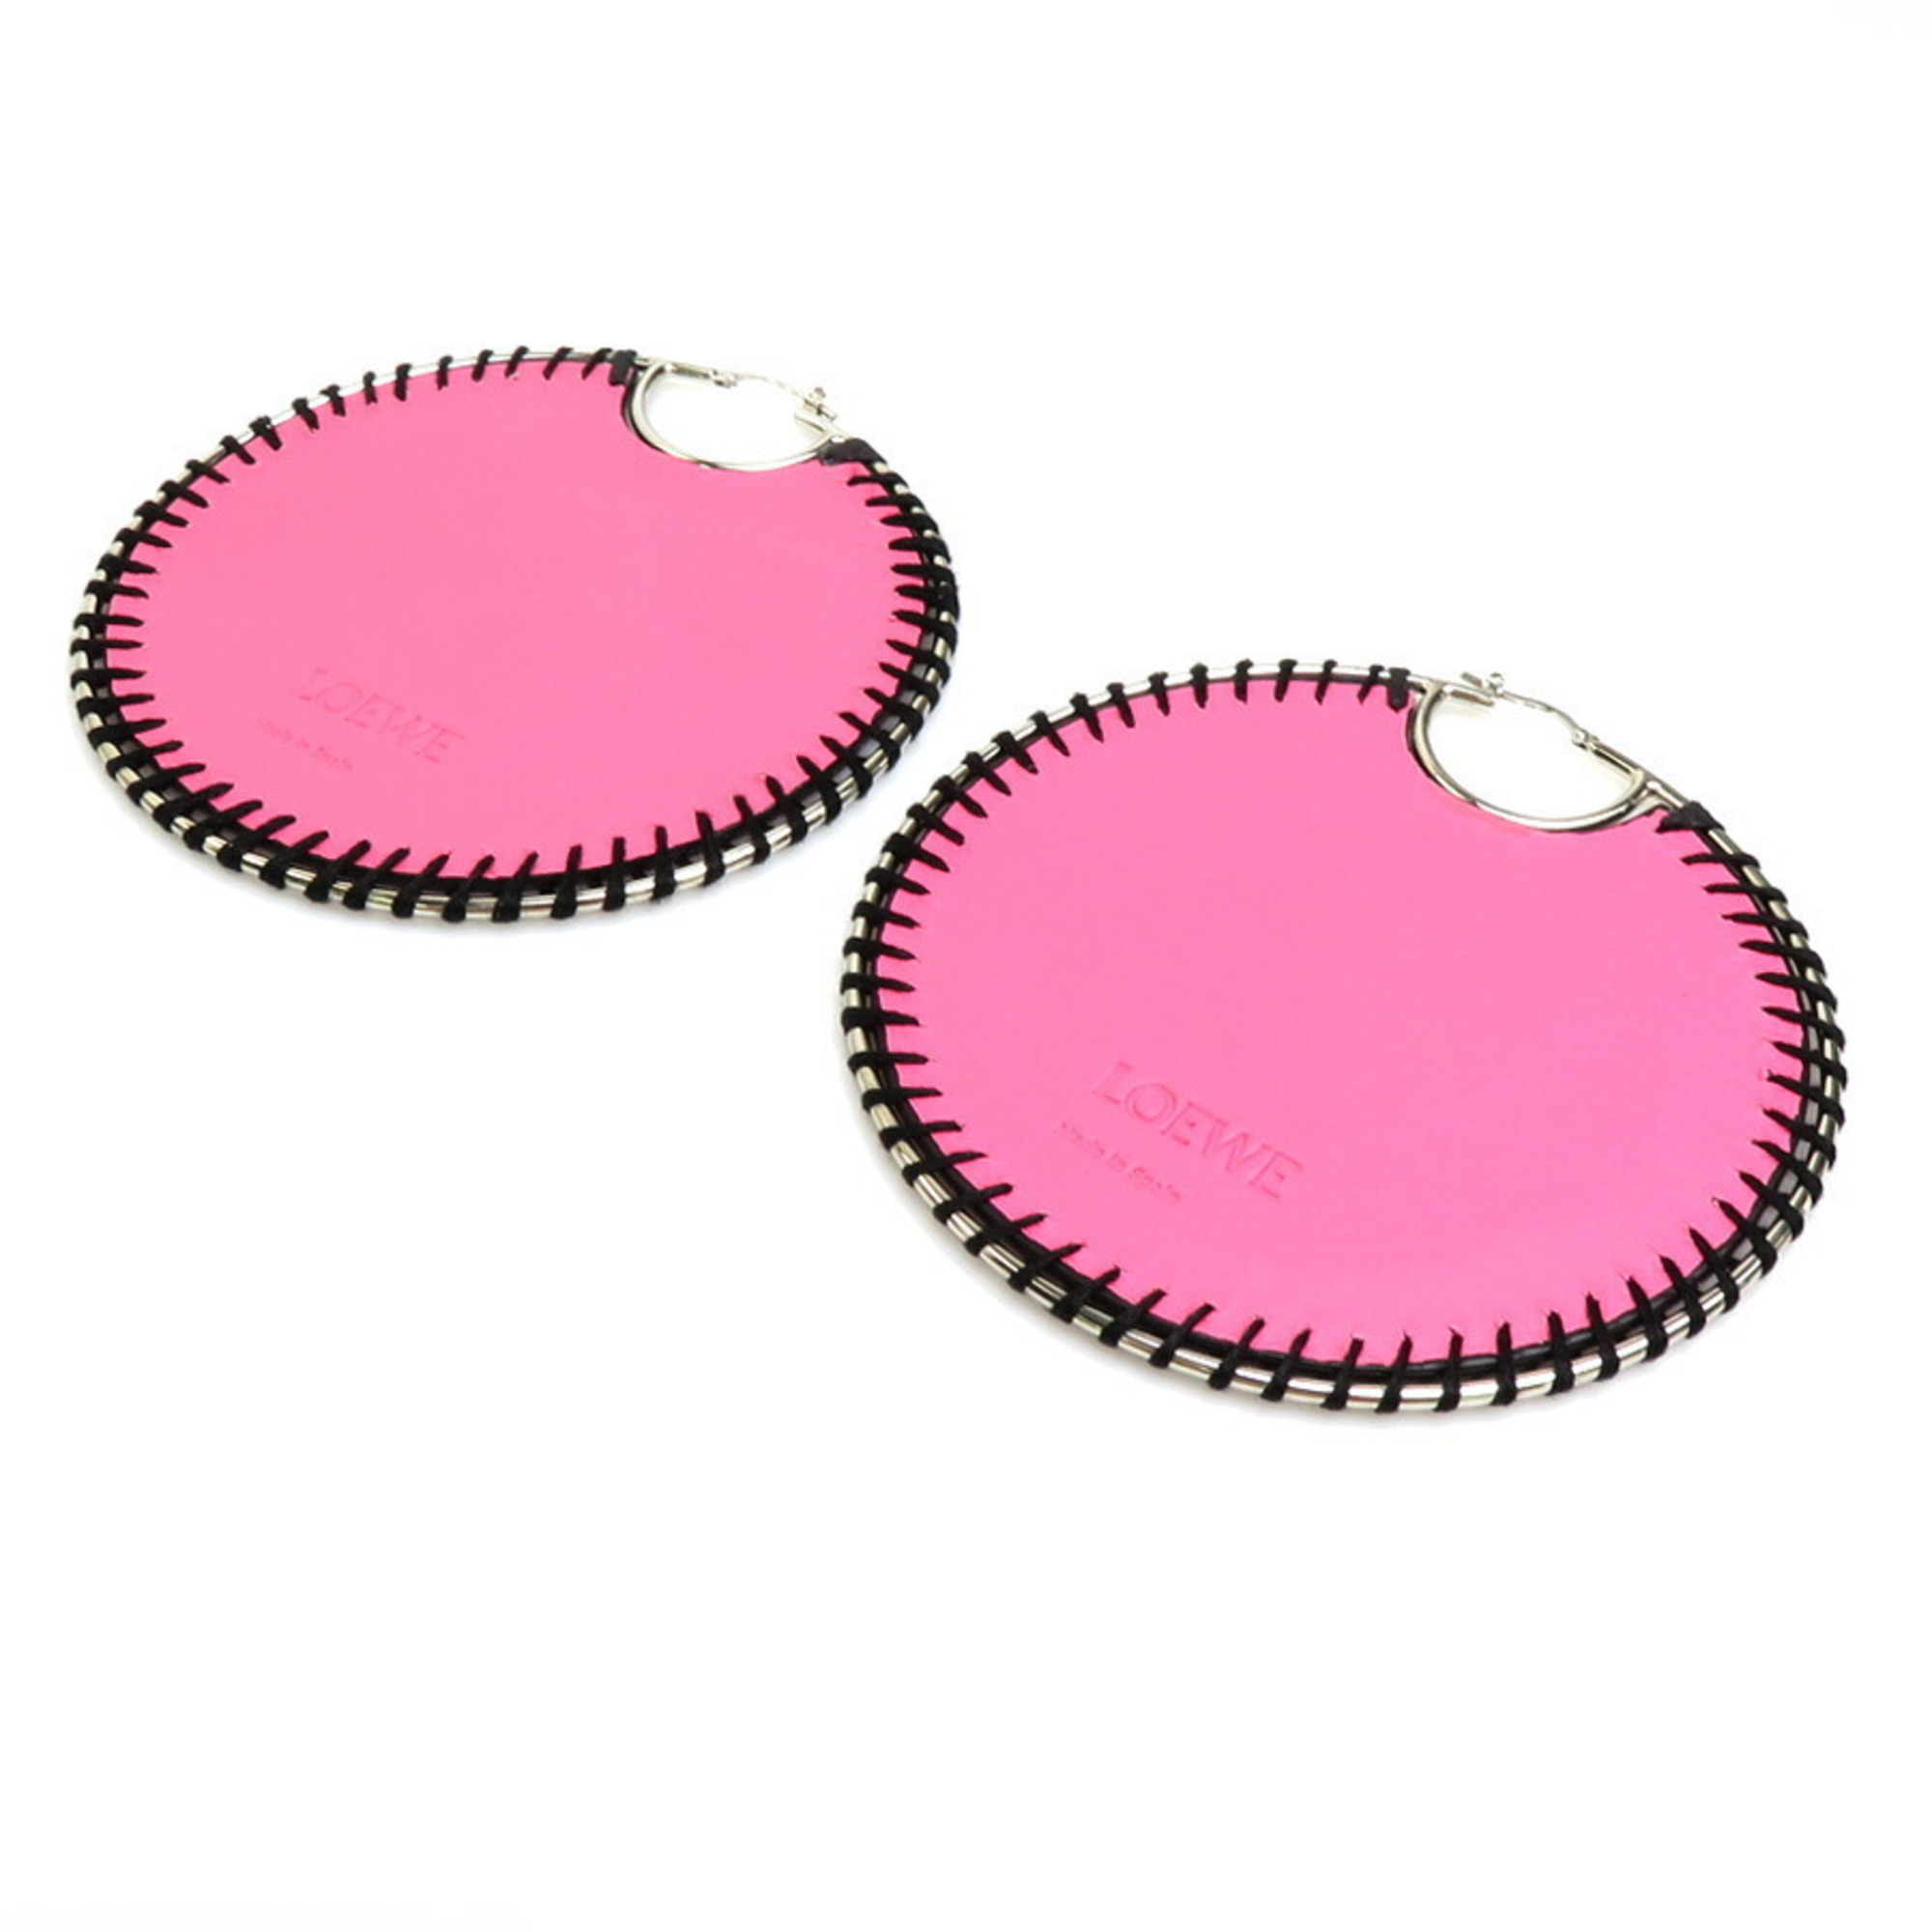 Loewe LOEWE Earrings Leather/Metal Pink x Black Women's